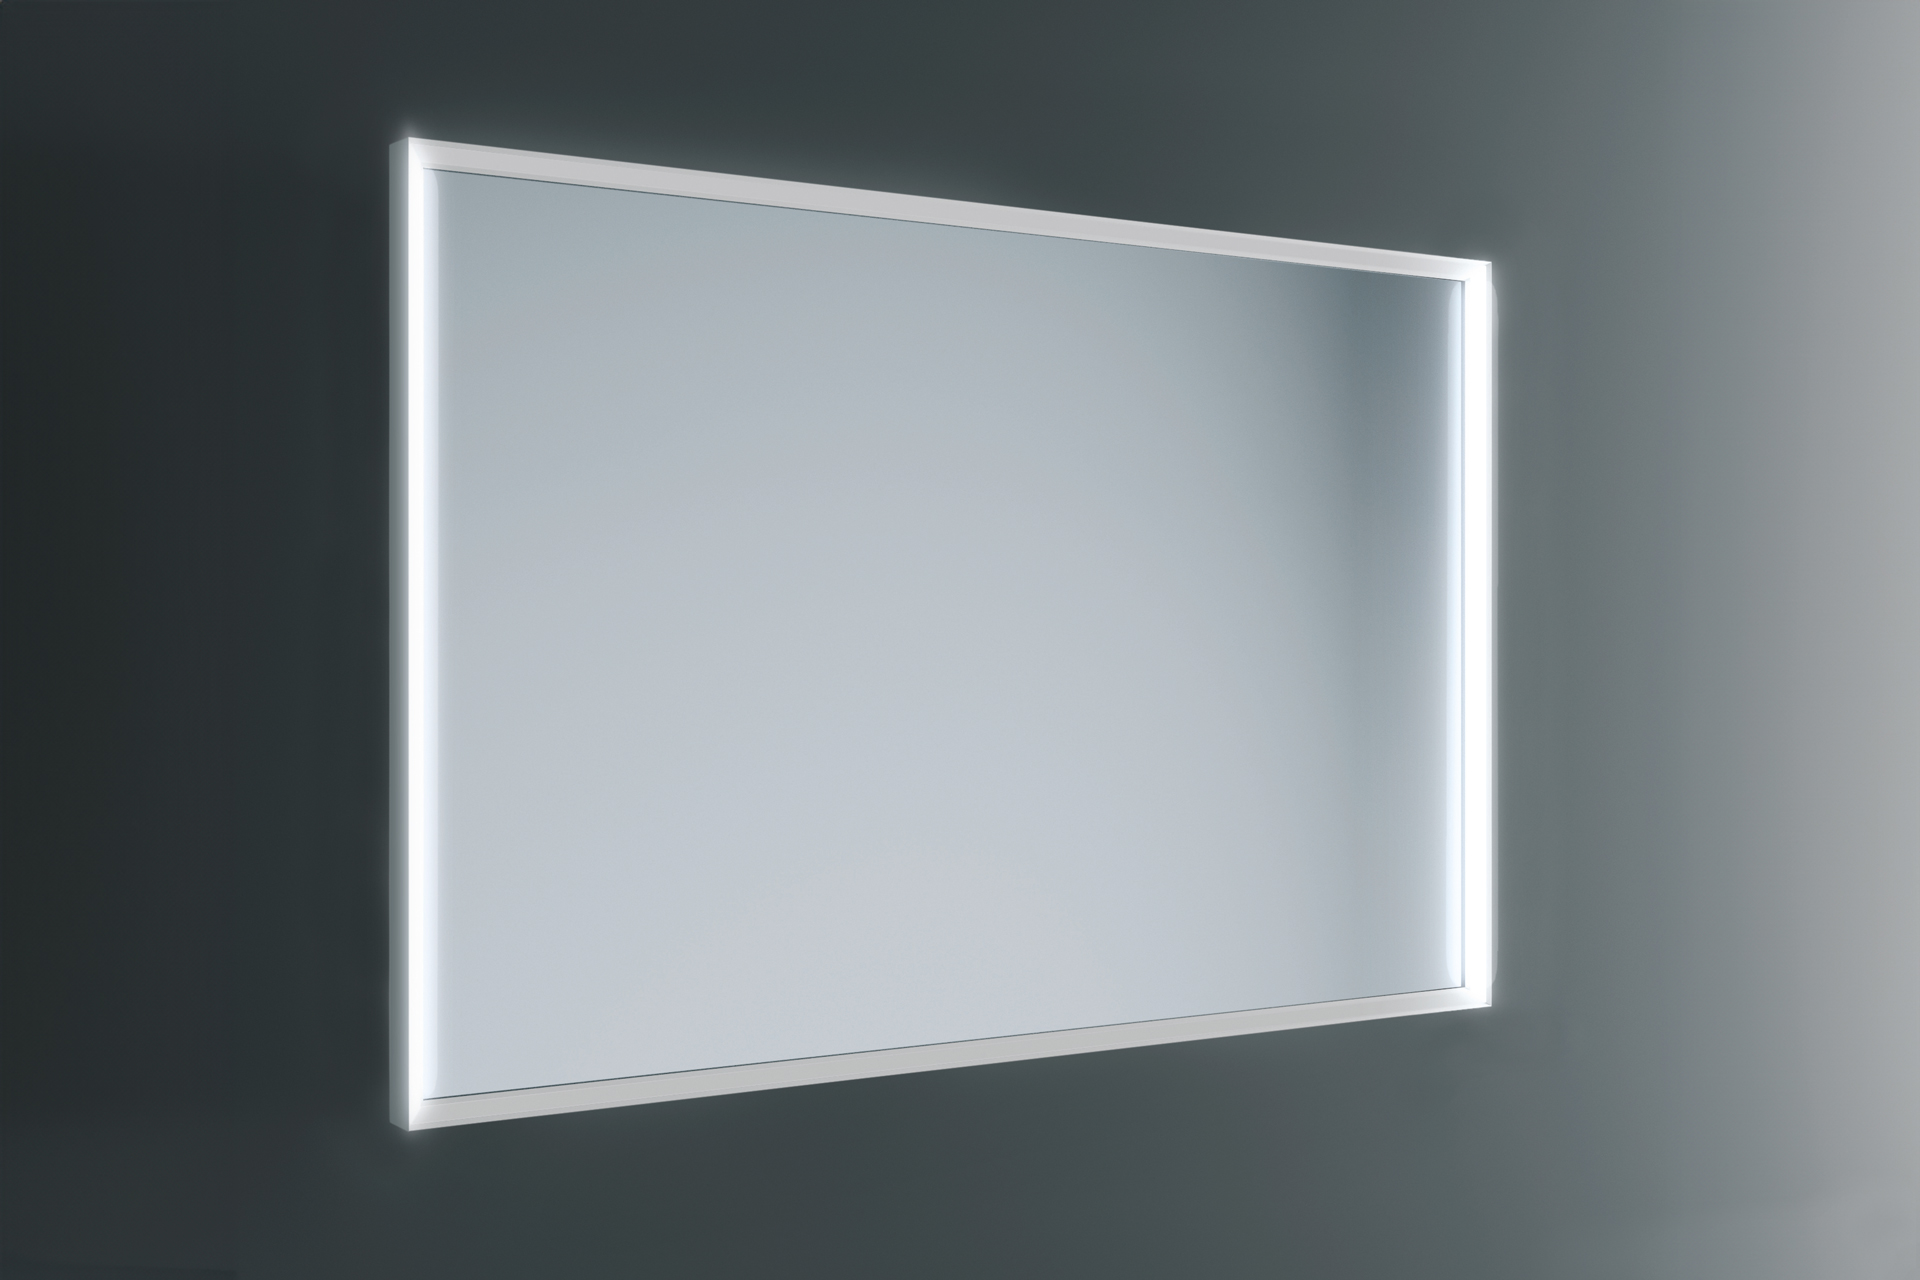 Specchio con telaio in alluminio verniciato. Luce frontale verticale interno telaio per un'illuminazione perfetta e senza ombre.